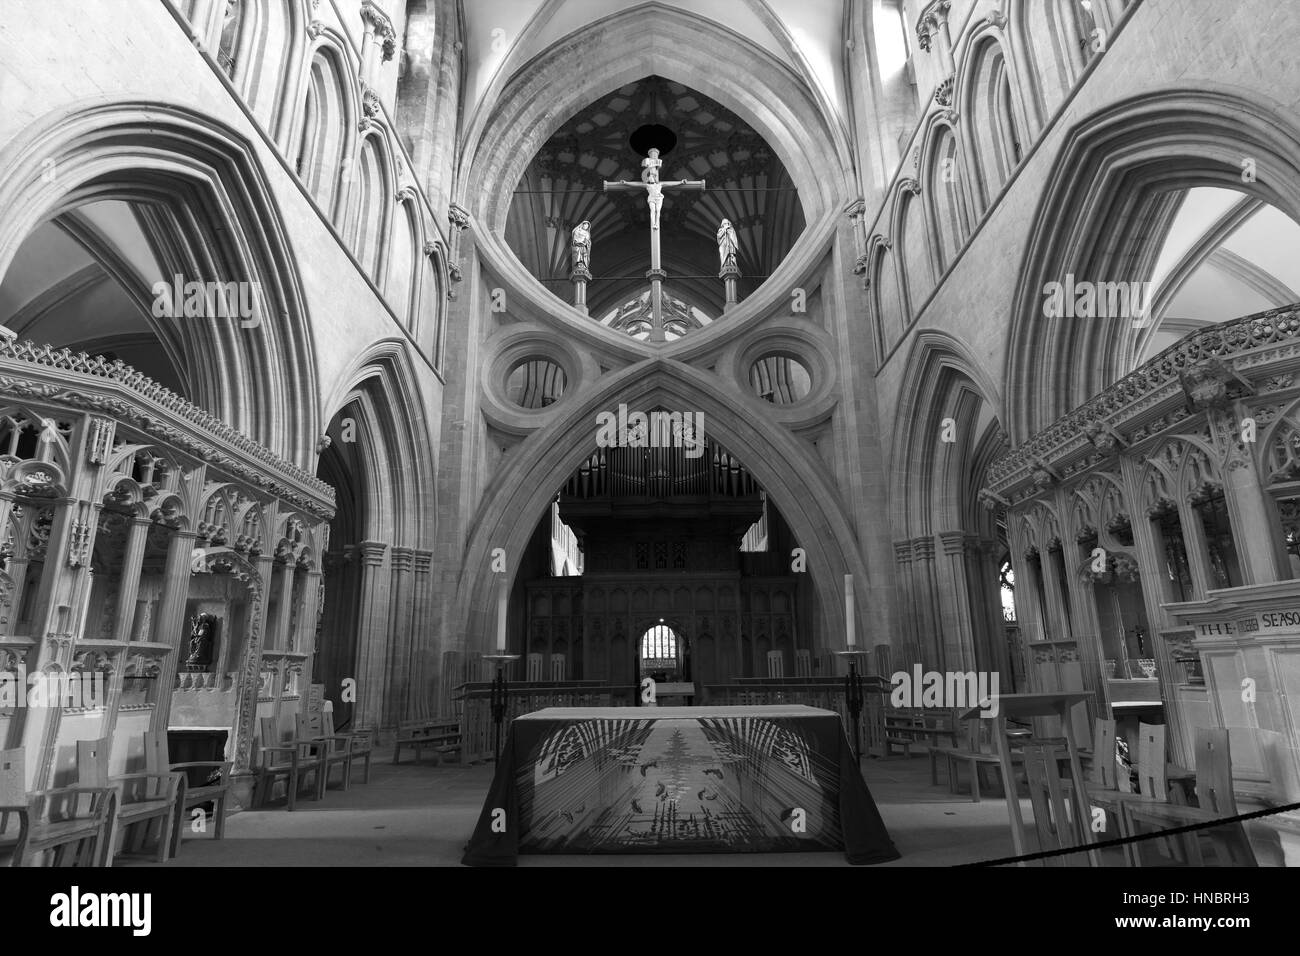 L'allée principale, intérieur de l'église cathédrale de St Andrews dans les puits, les puits ville, englands plus petite ville, comté de Somerset, Angleterre, Grande-Bretagne, Royaume-Uni Banque D'Images